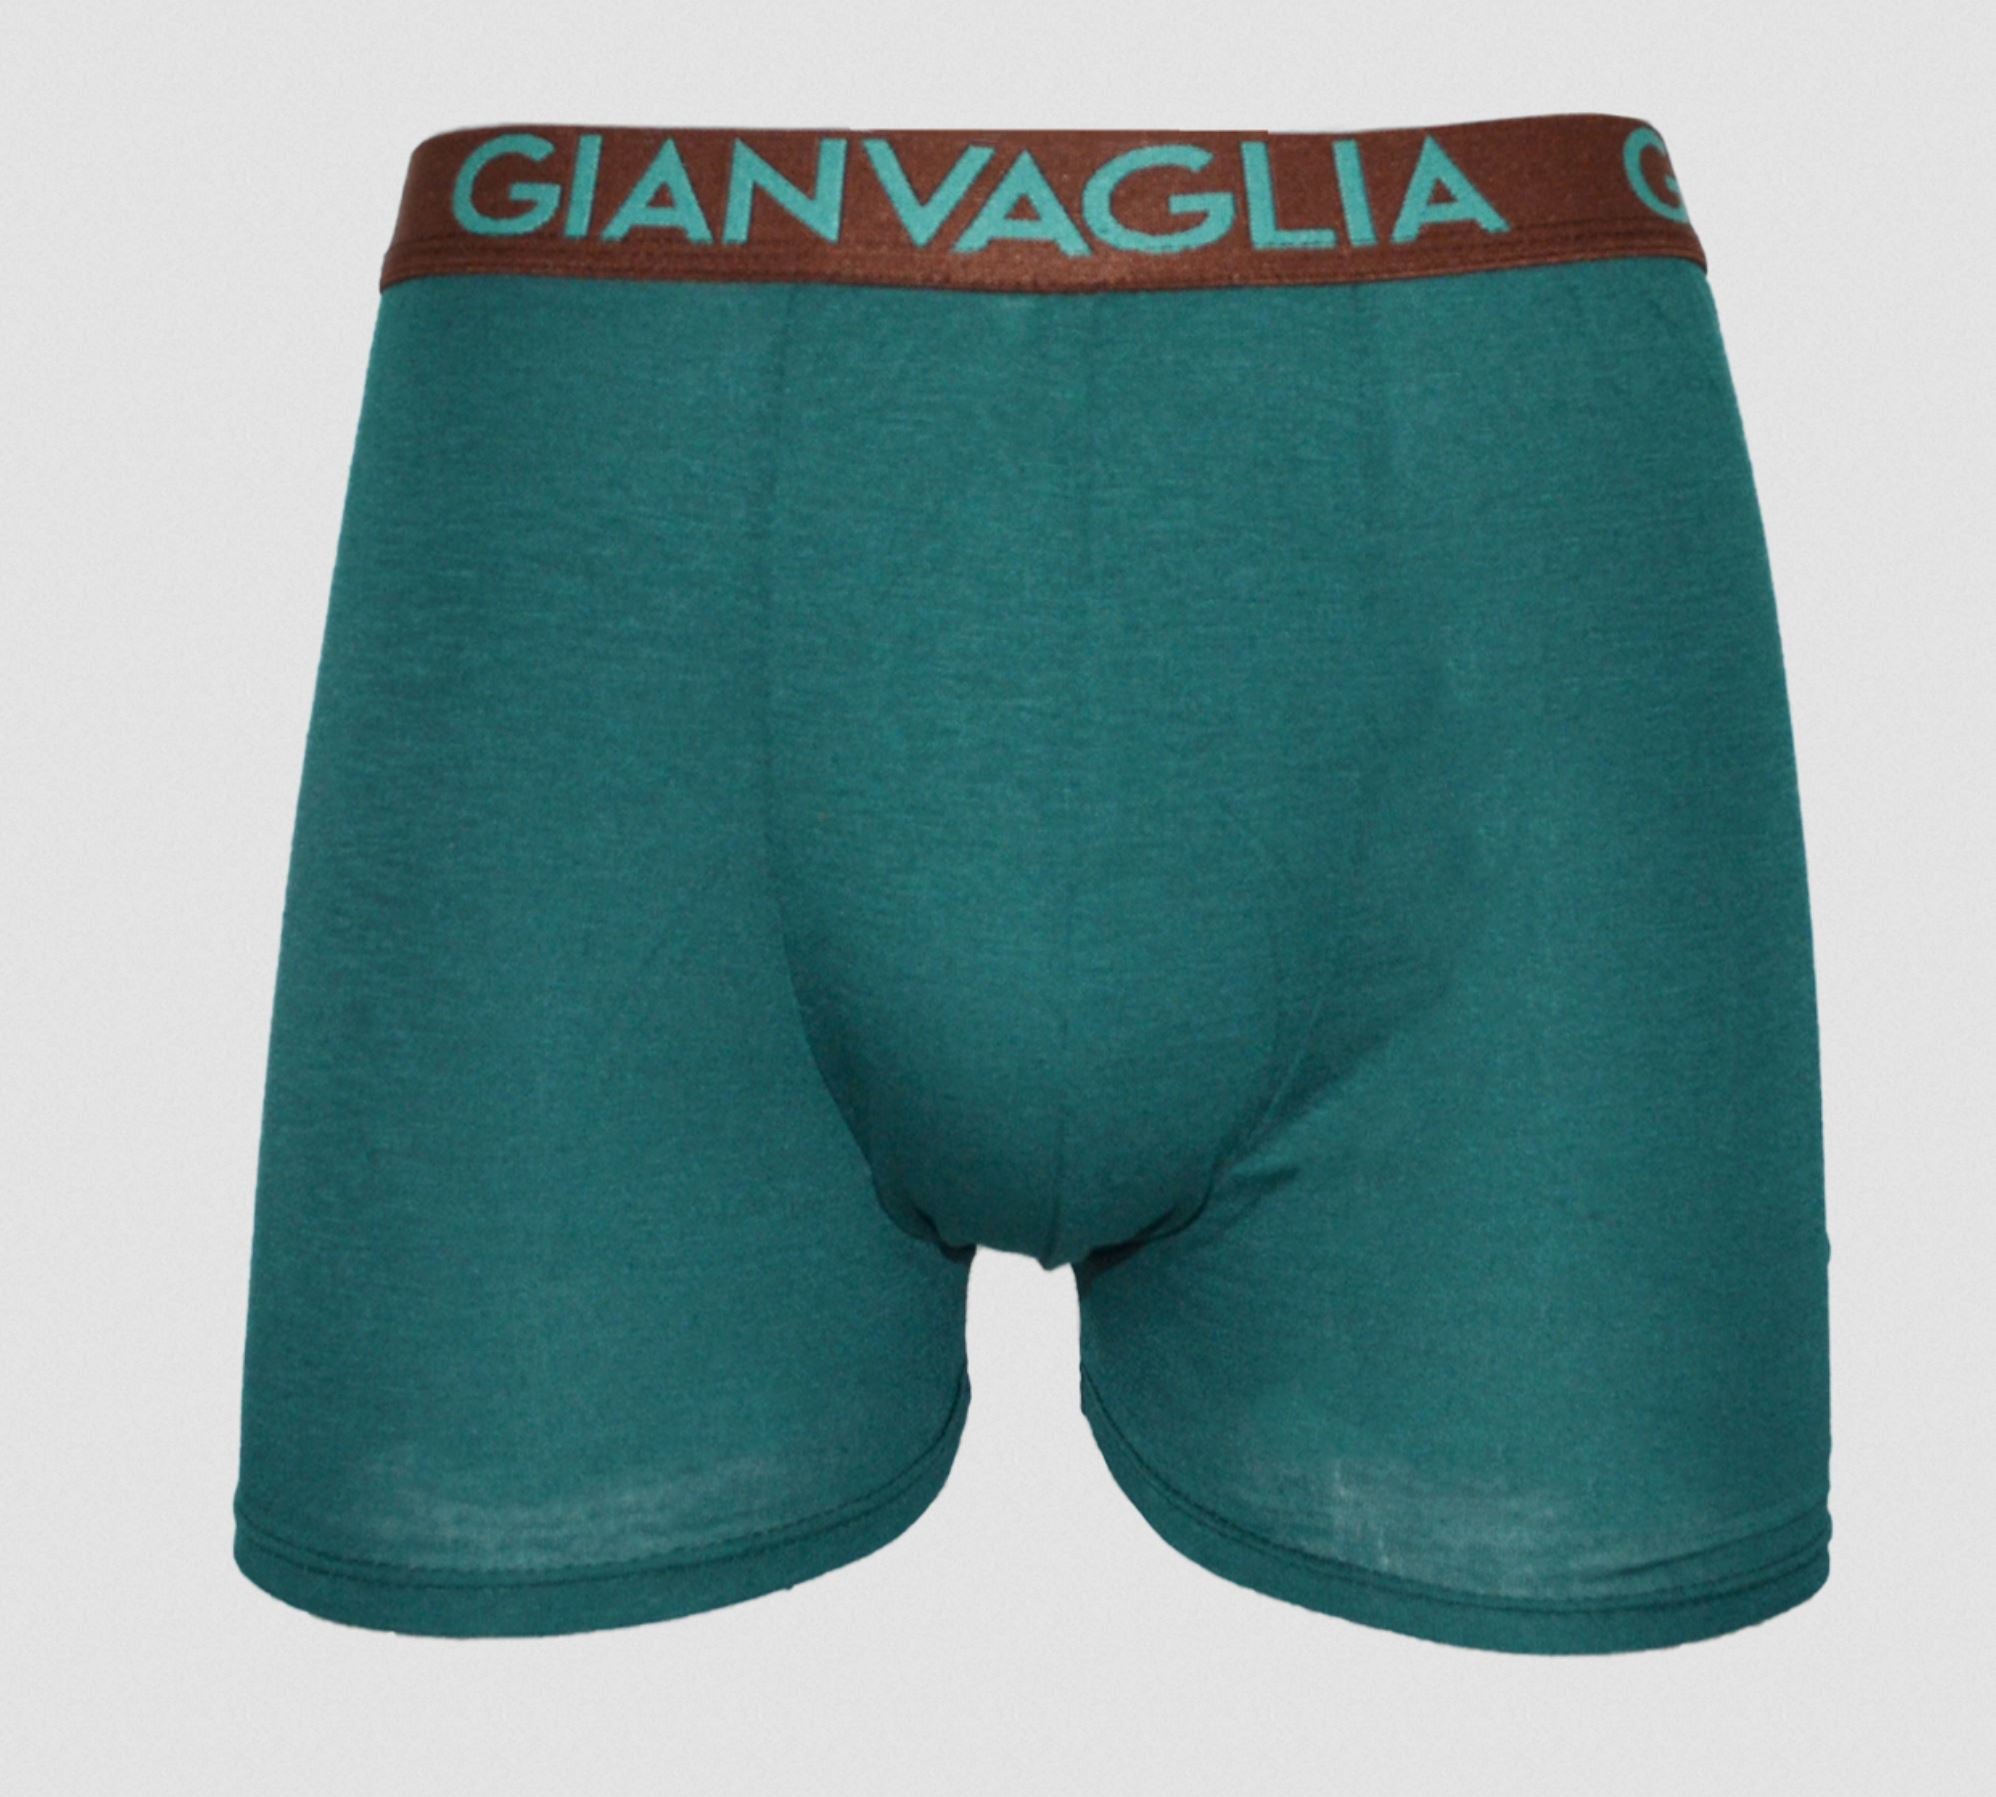 Gianvaglia Katoenen Boxershorts 5-Pack